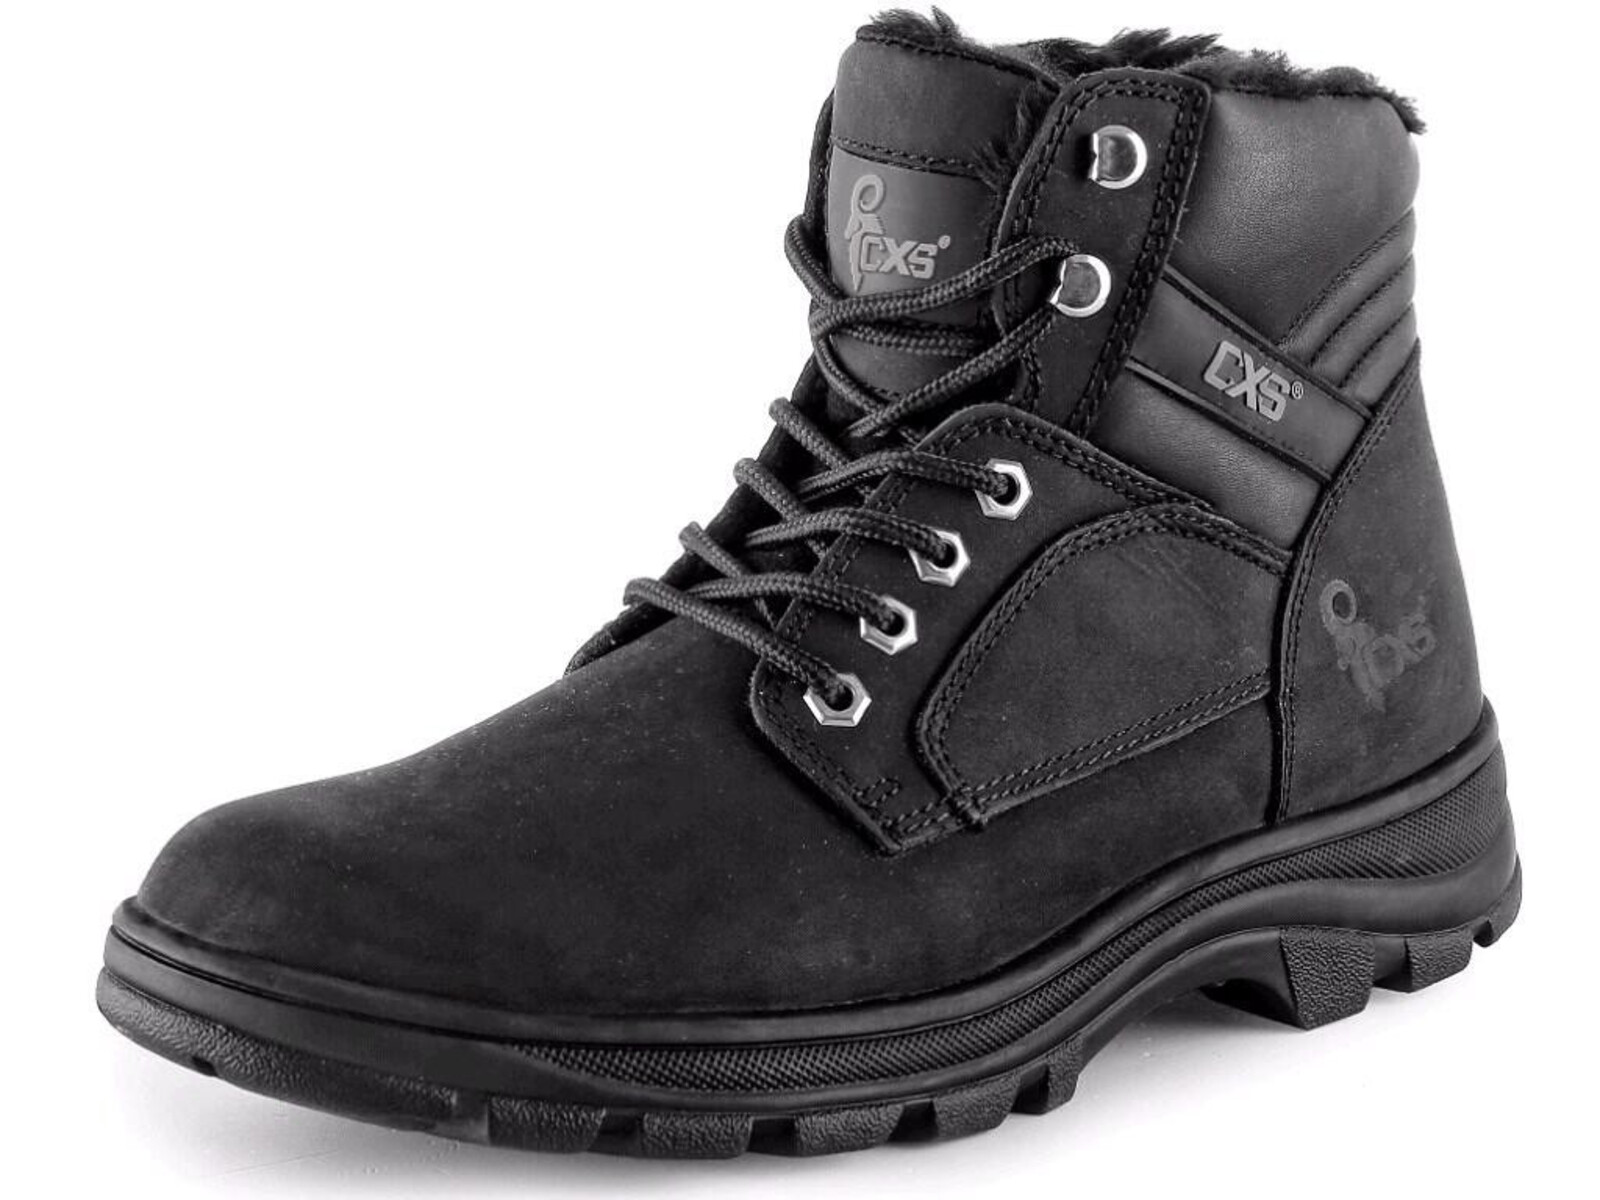 Zimná členková obuv CXS Road Industry FO E CI SRA - veľkosť: 44, farba: čierna